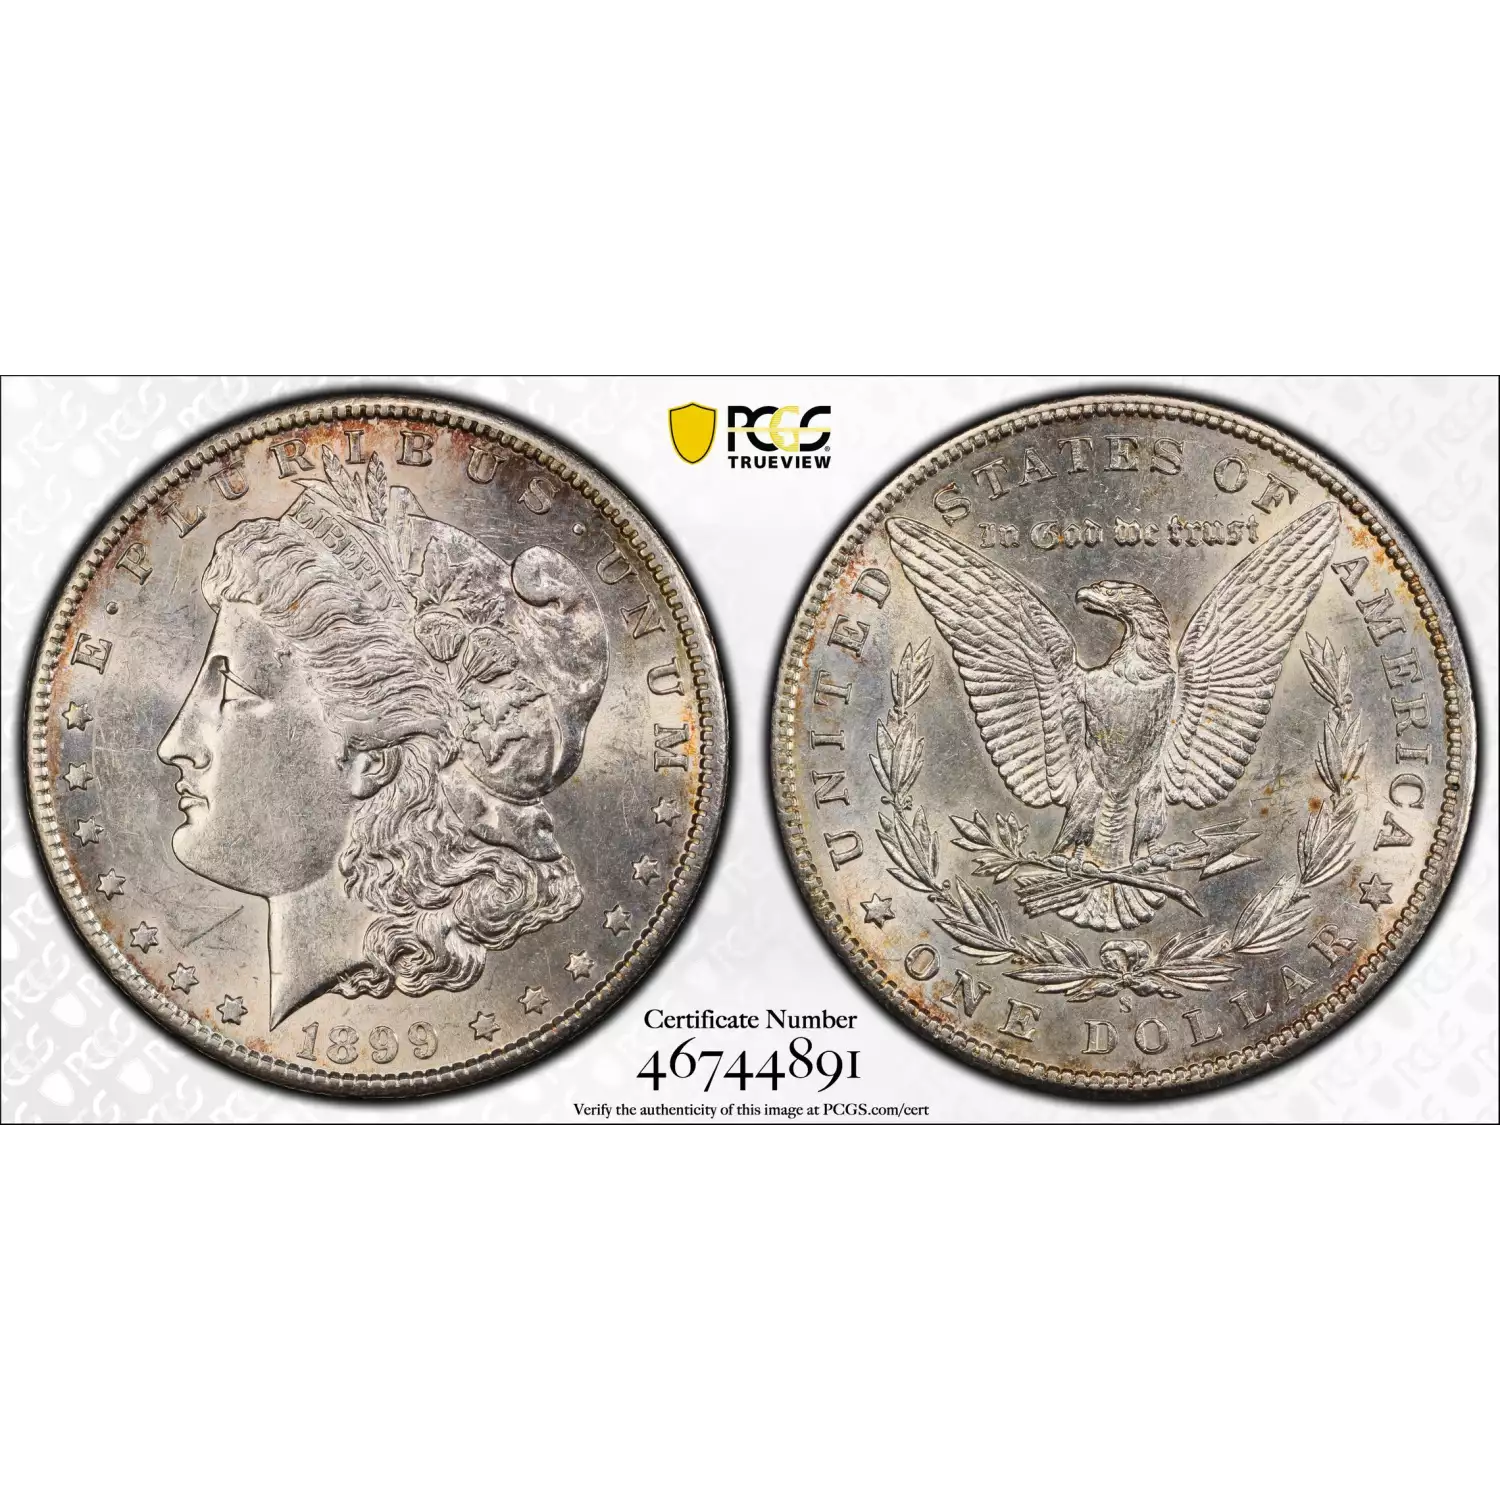 1899-S $1